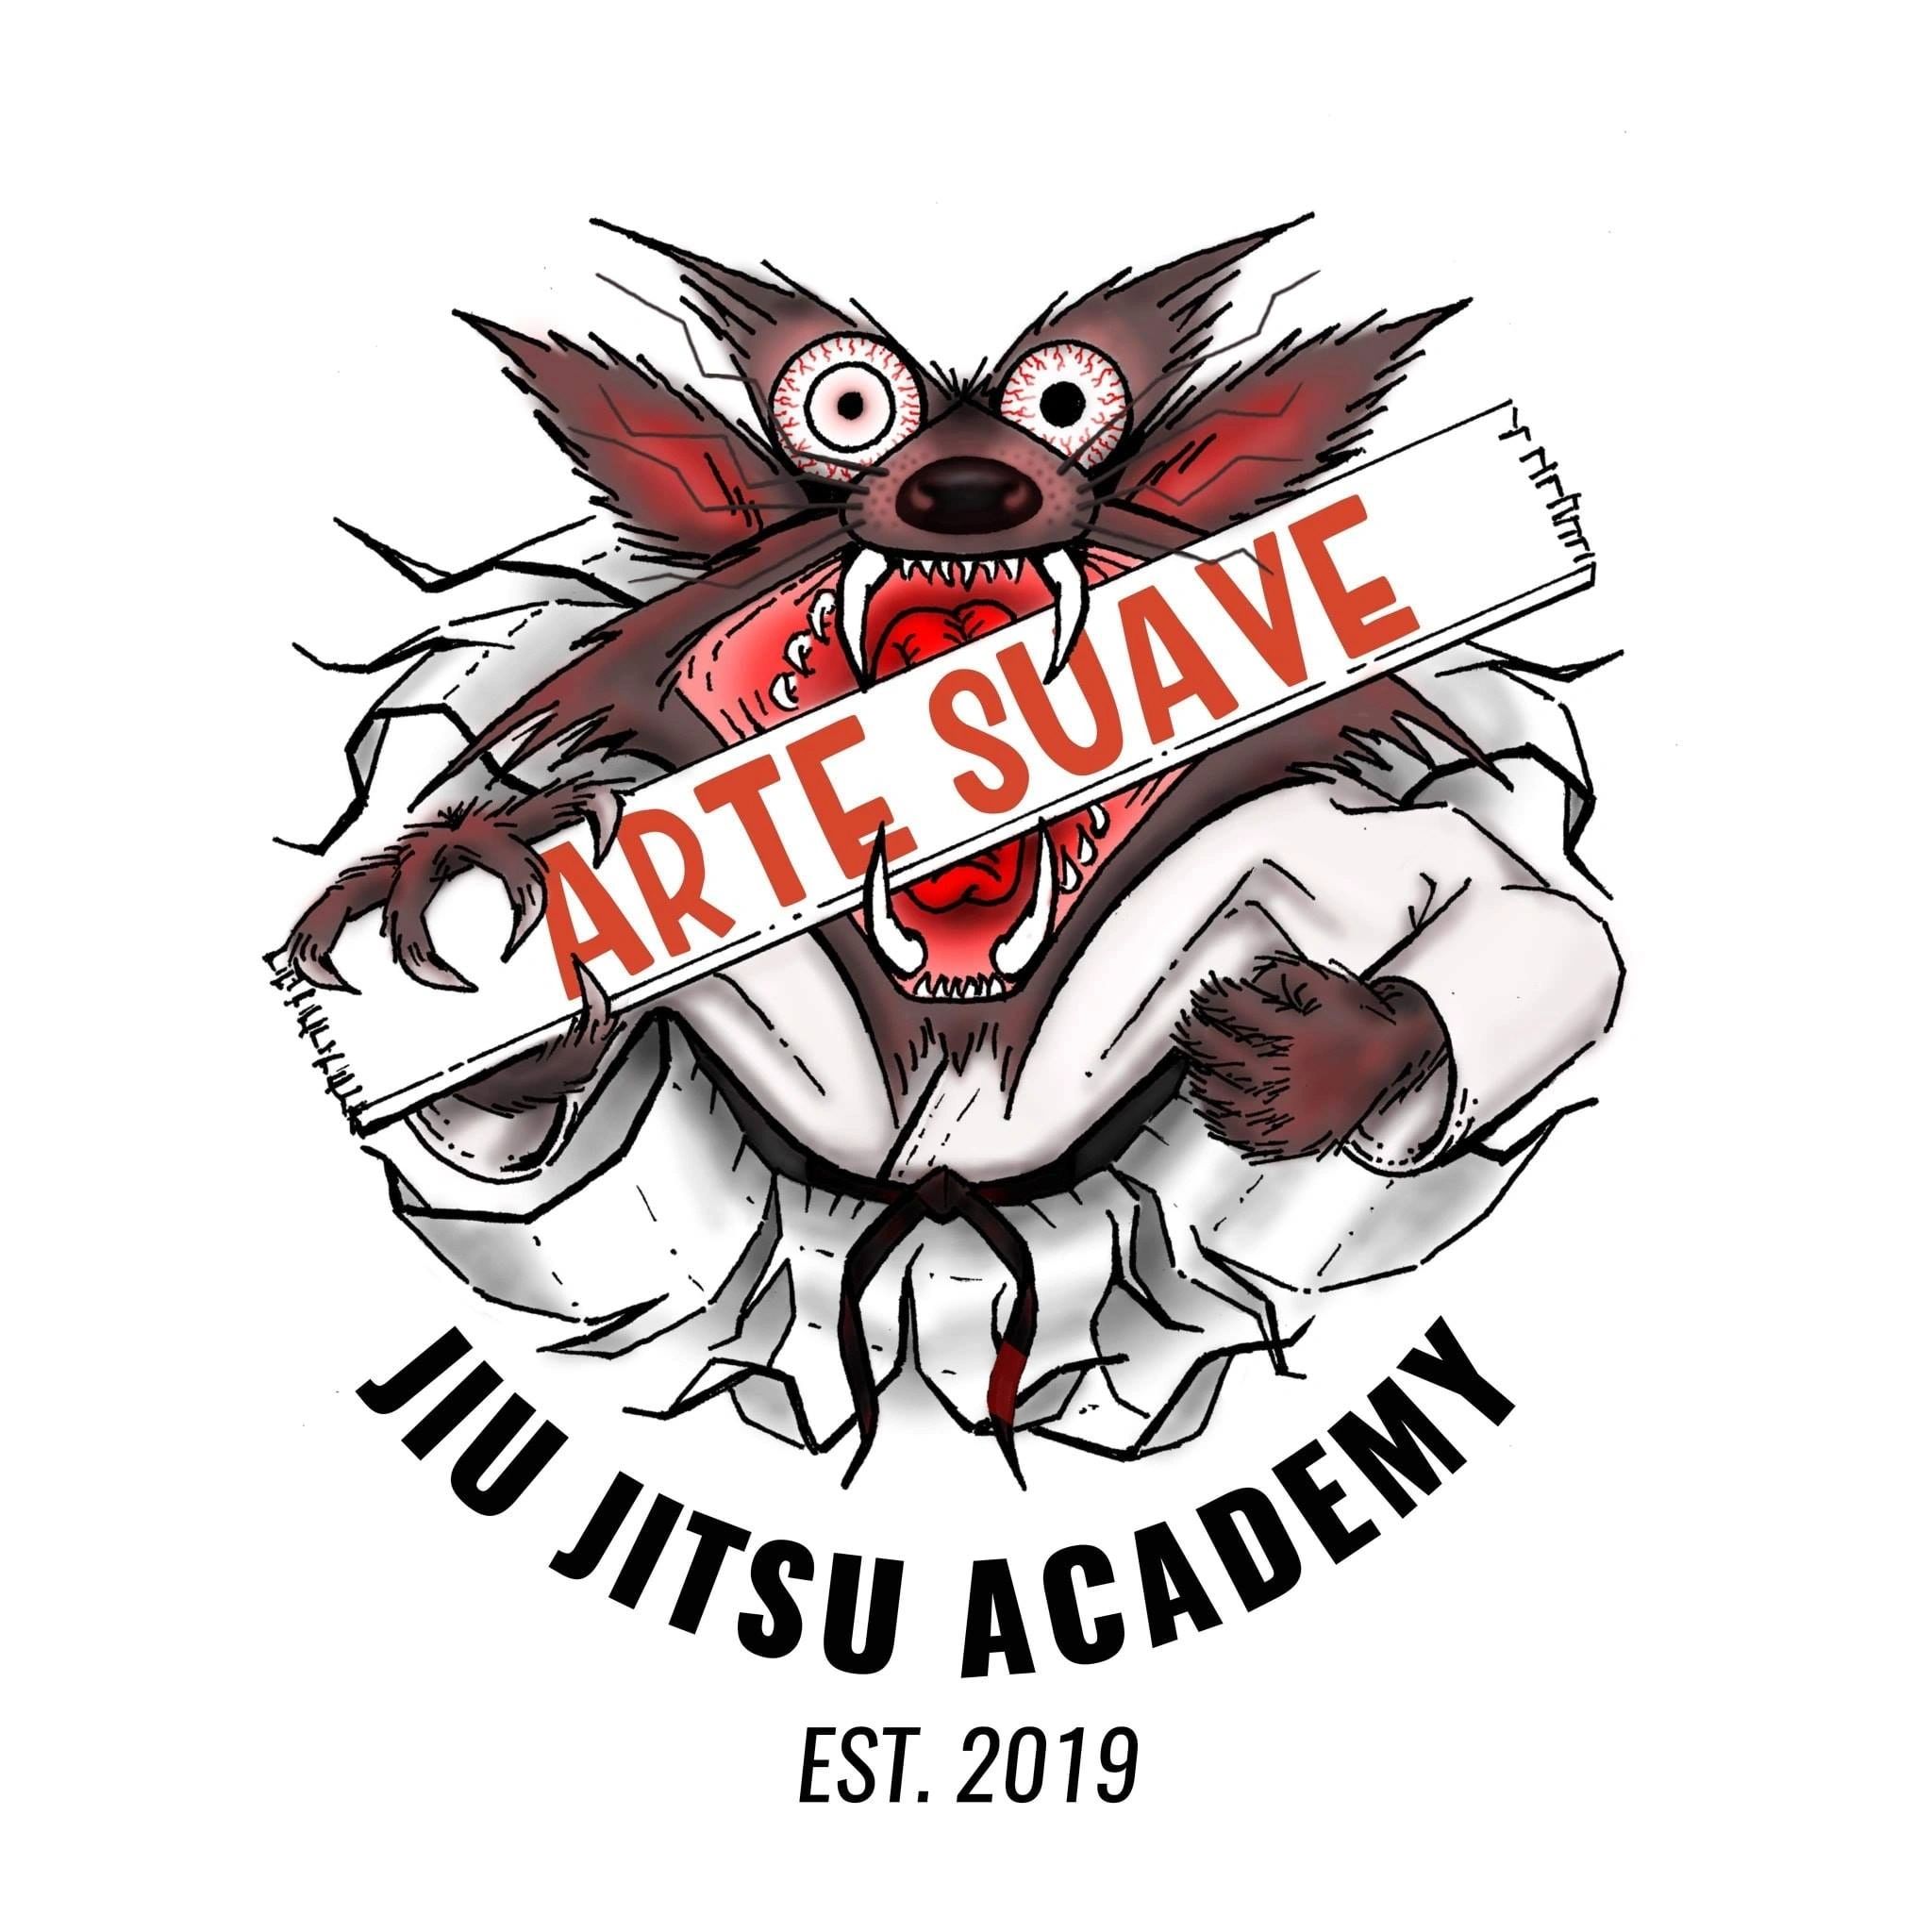 Arte Suave Jiu Jitsu Academy - Martial Arts, Brazilian Jiu Jitsu